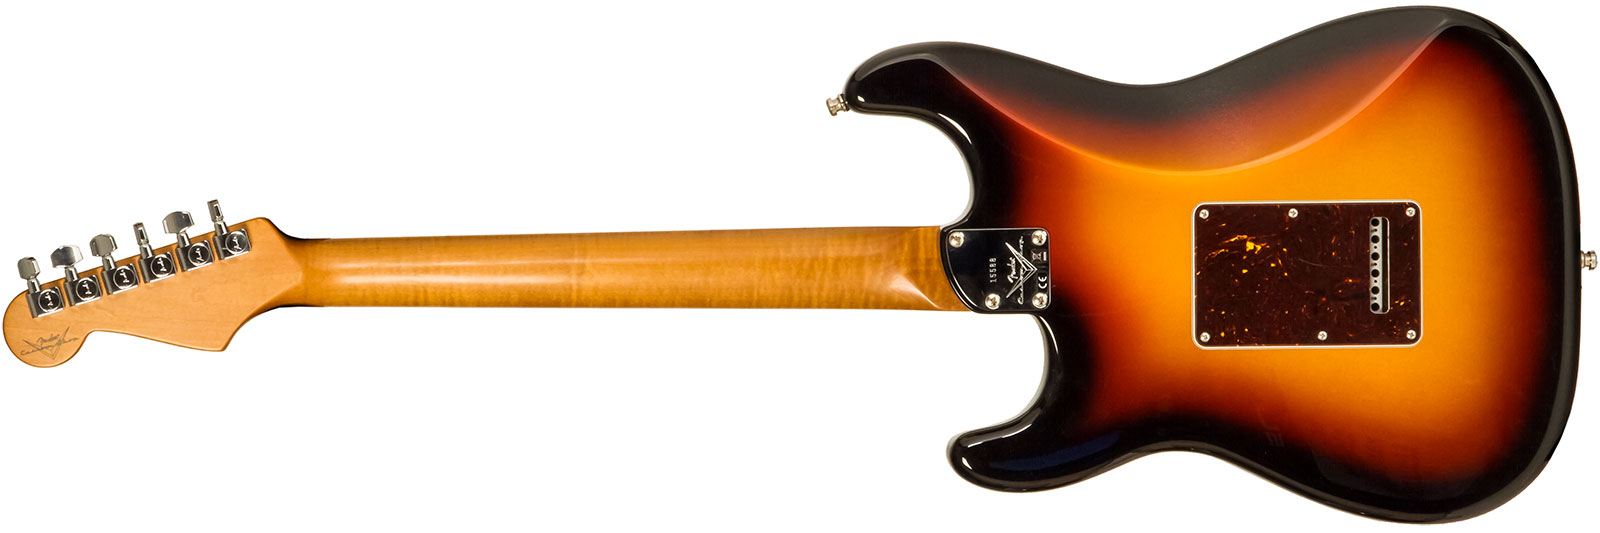 Fender Custom Shop Strat Elite 3s Trem Mn #xn15588 - Nos 3-color Sunburst - E-Gitarre in Str-Form - Variation 1